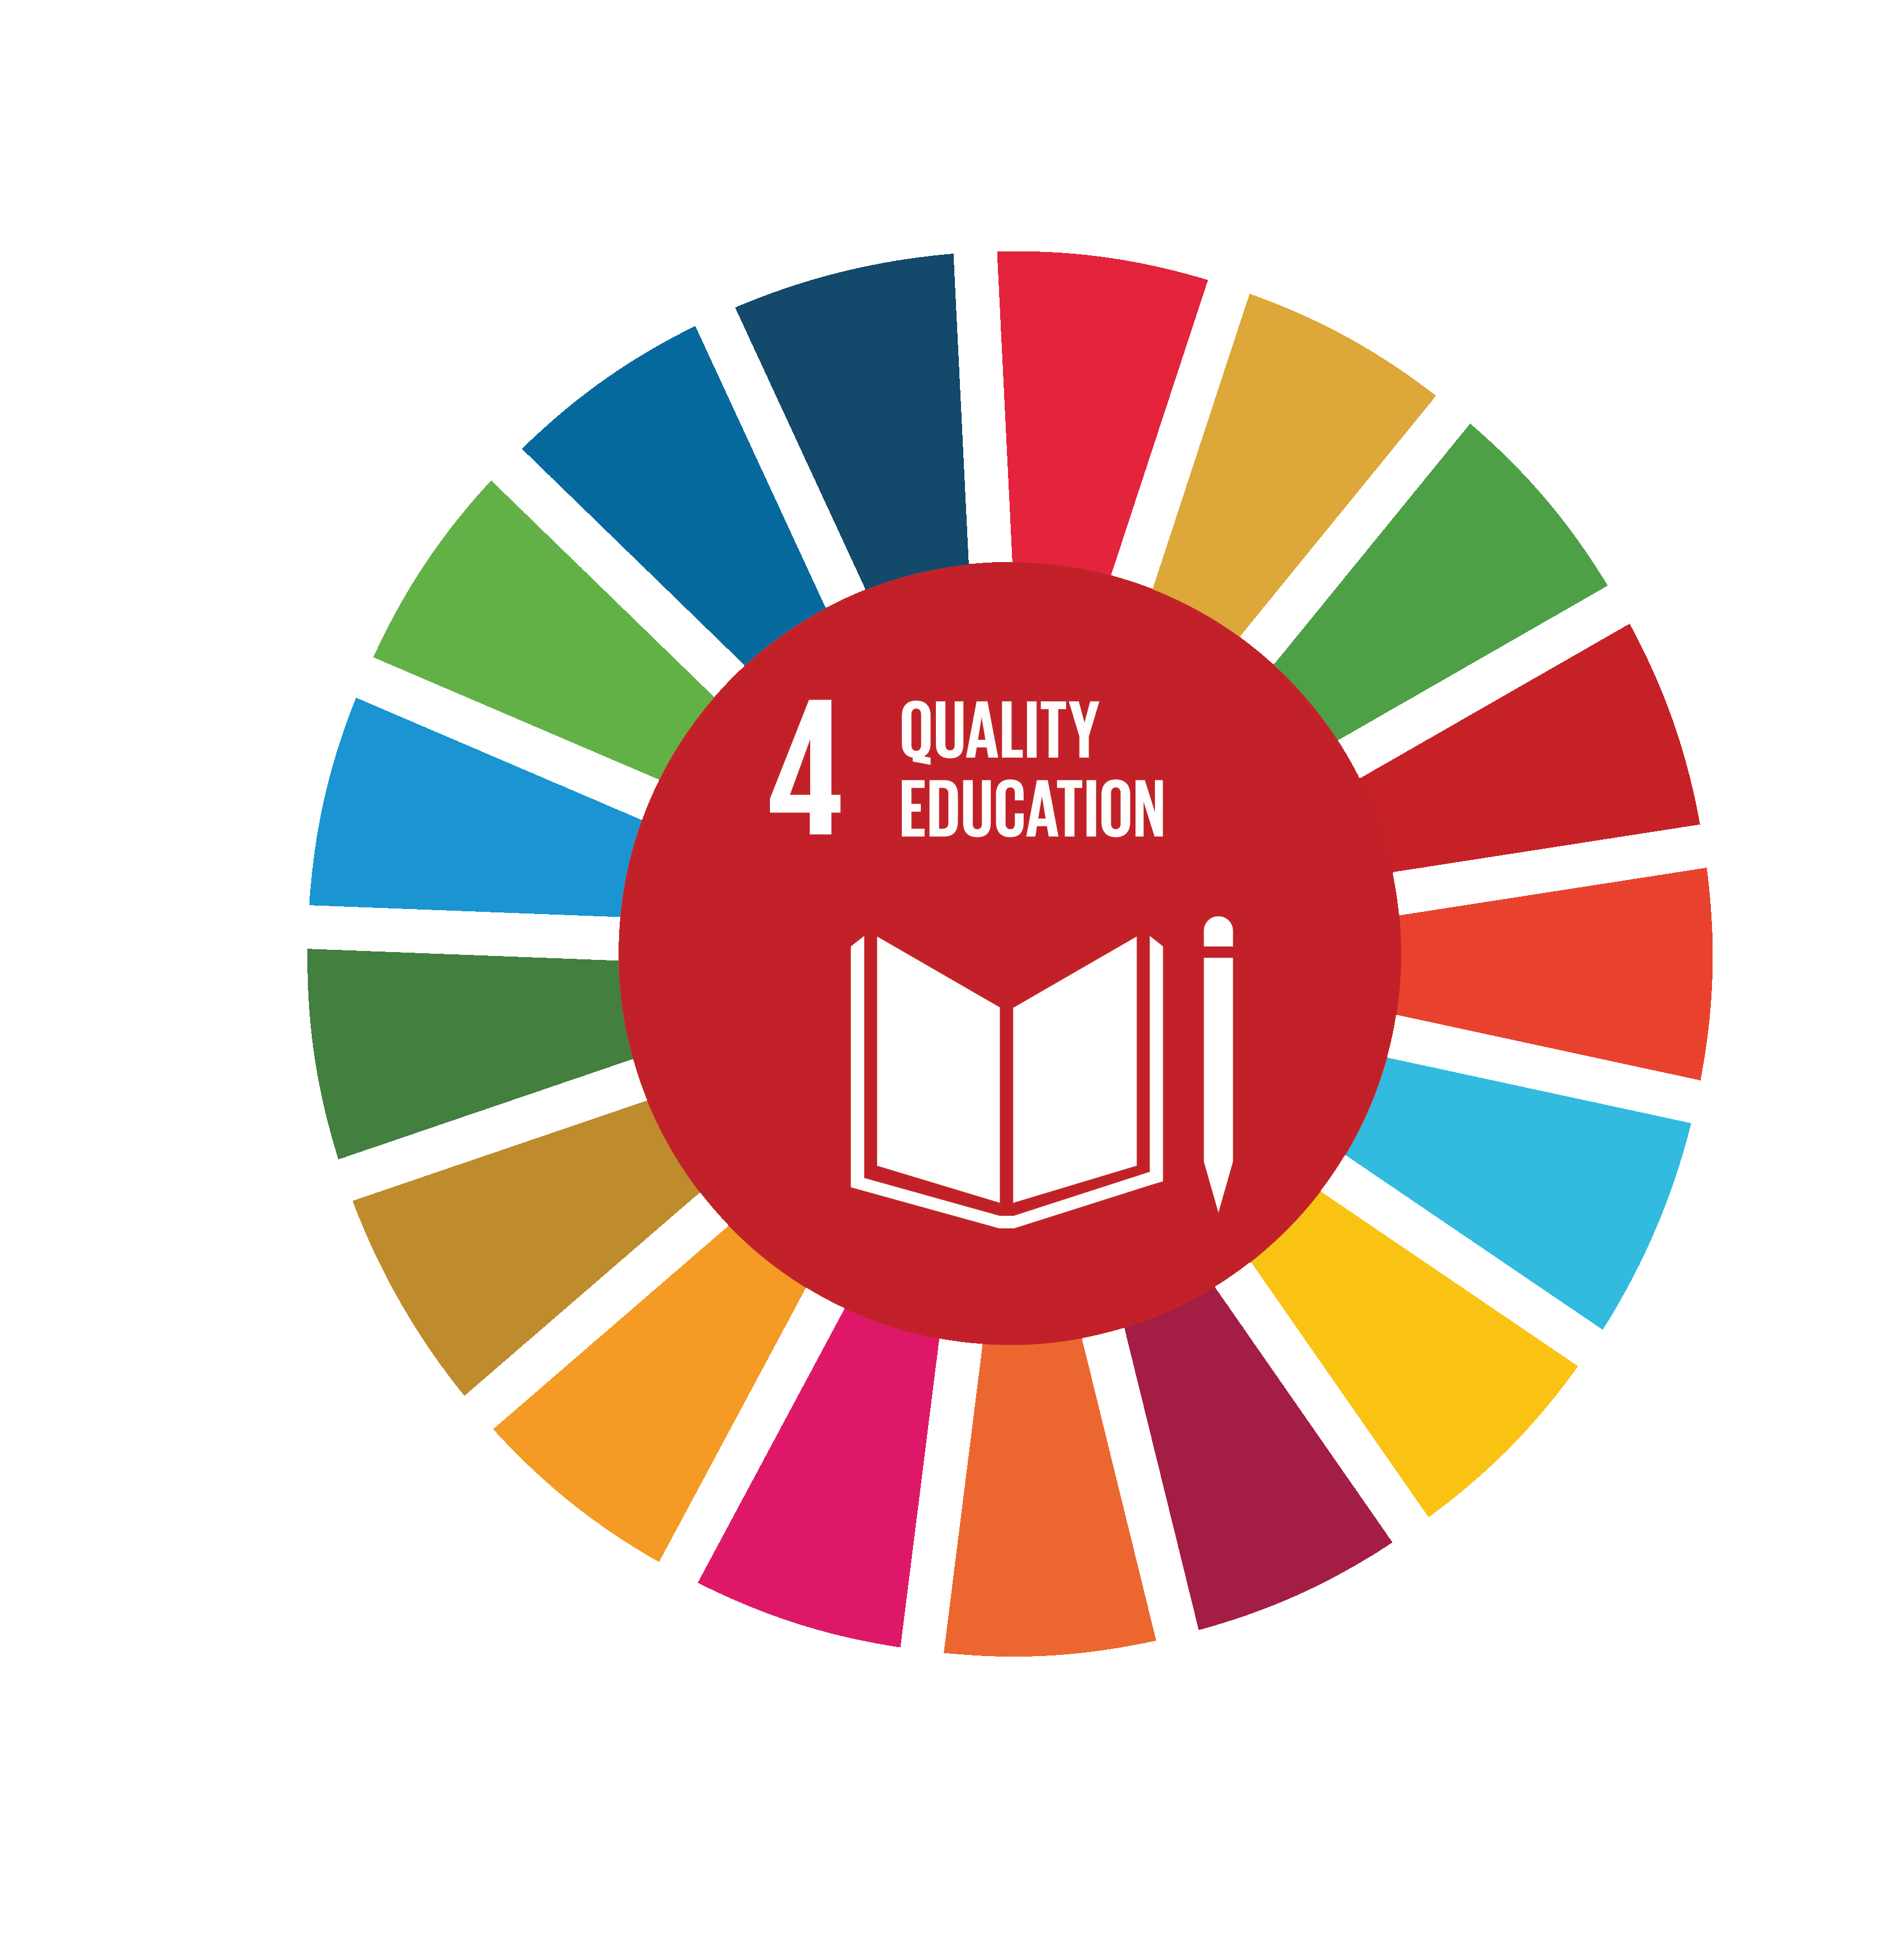 SDG-Education 2030